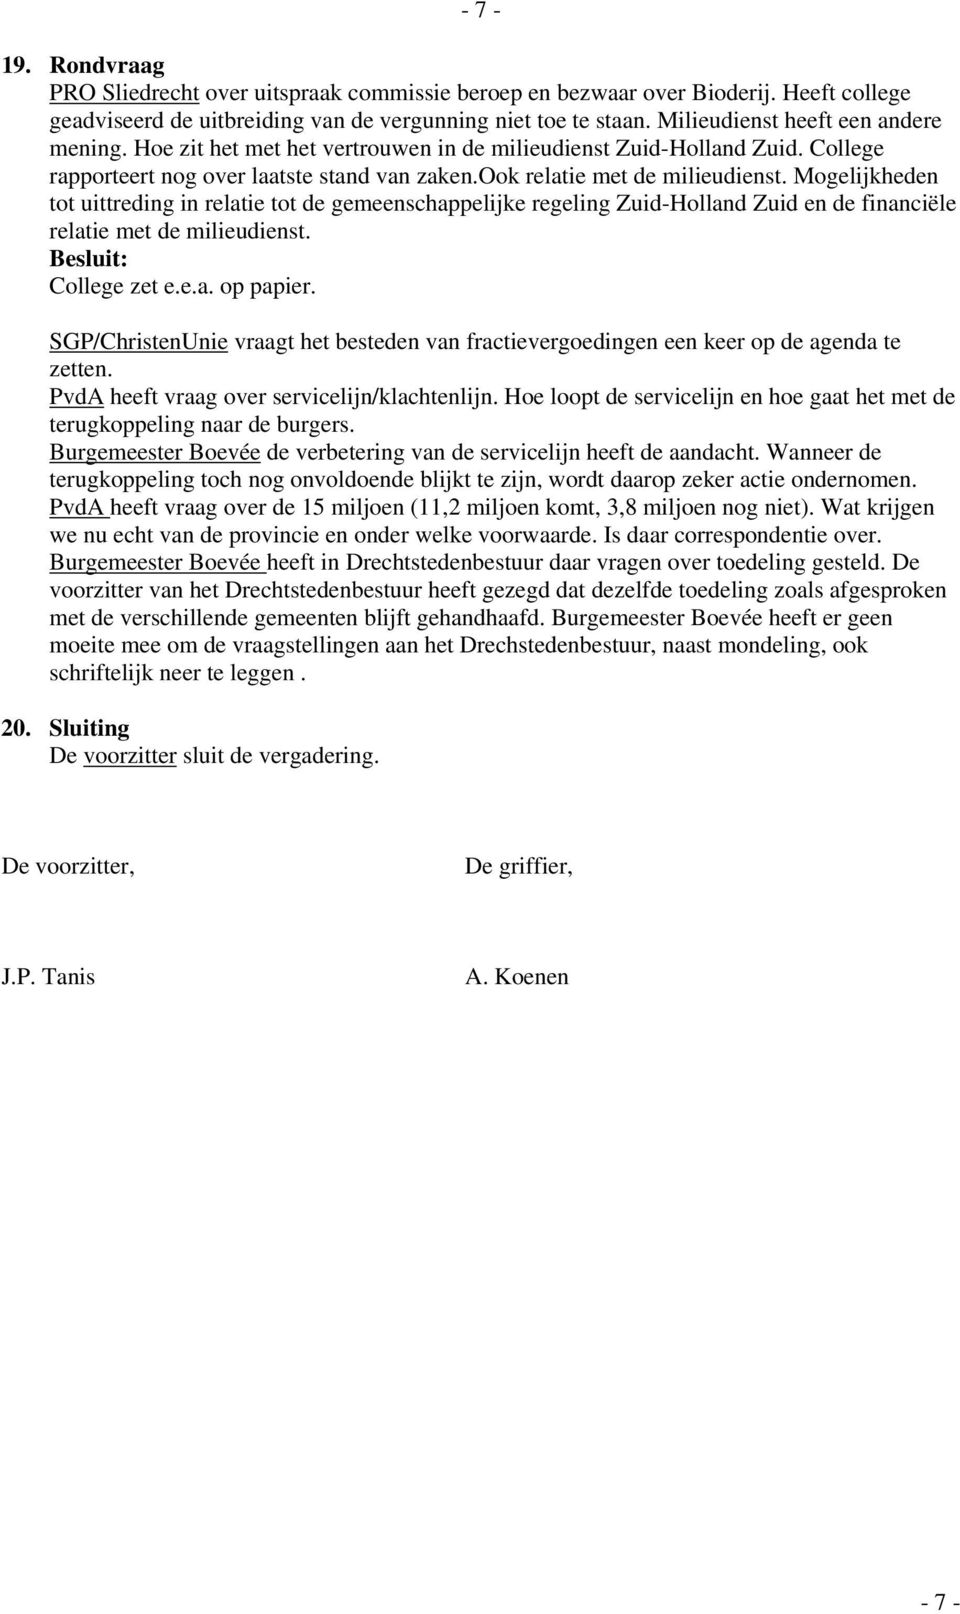 Mogelijkheden tot uittreding in relatie tot de gemeenschappelijke regeling Zuid-Holland Zuid en de financiële relatie met de milieudienst. College zet e.e.a. op papier.